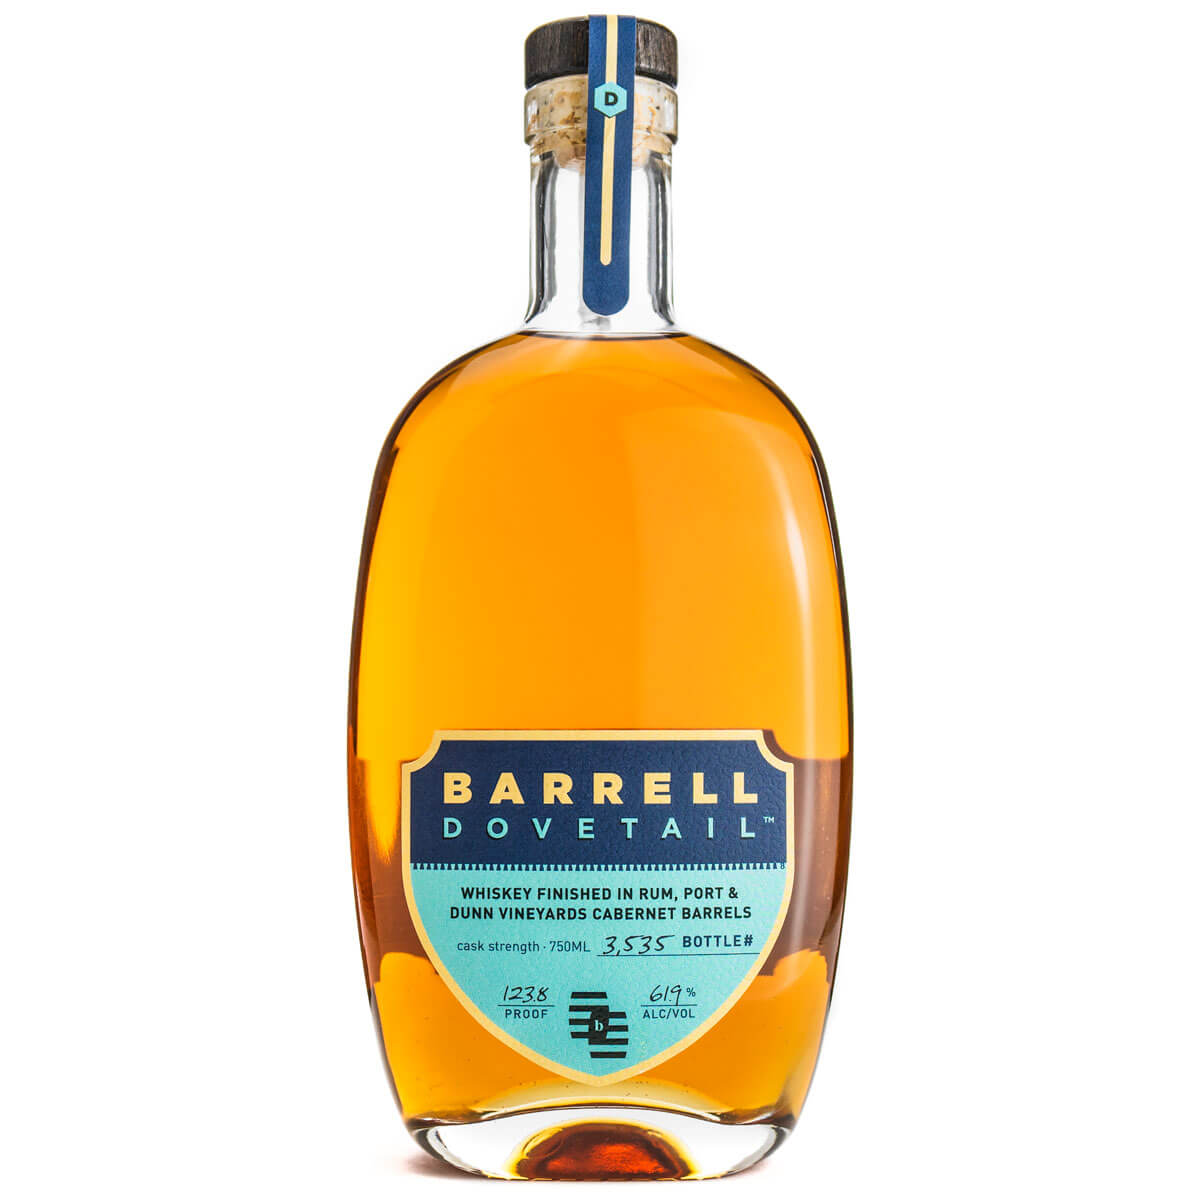 Barrell Dovetail bottle